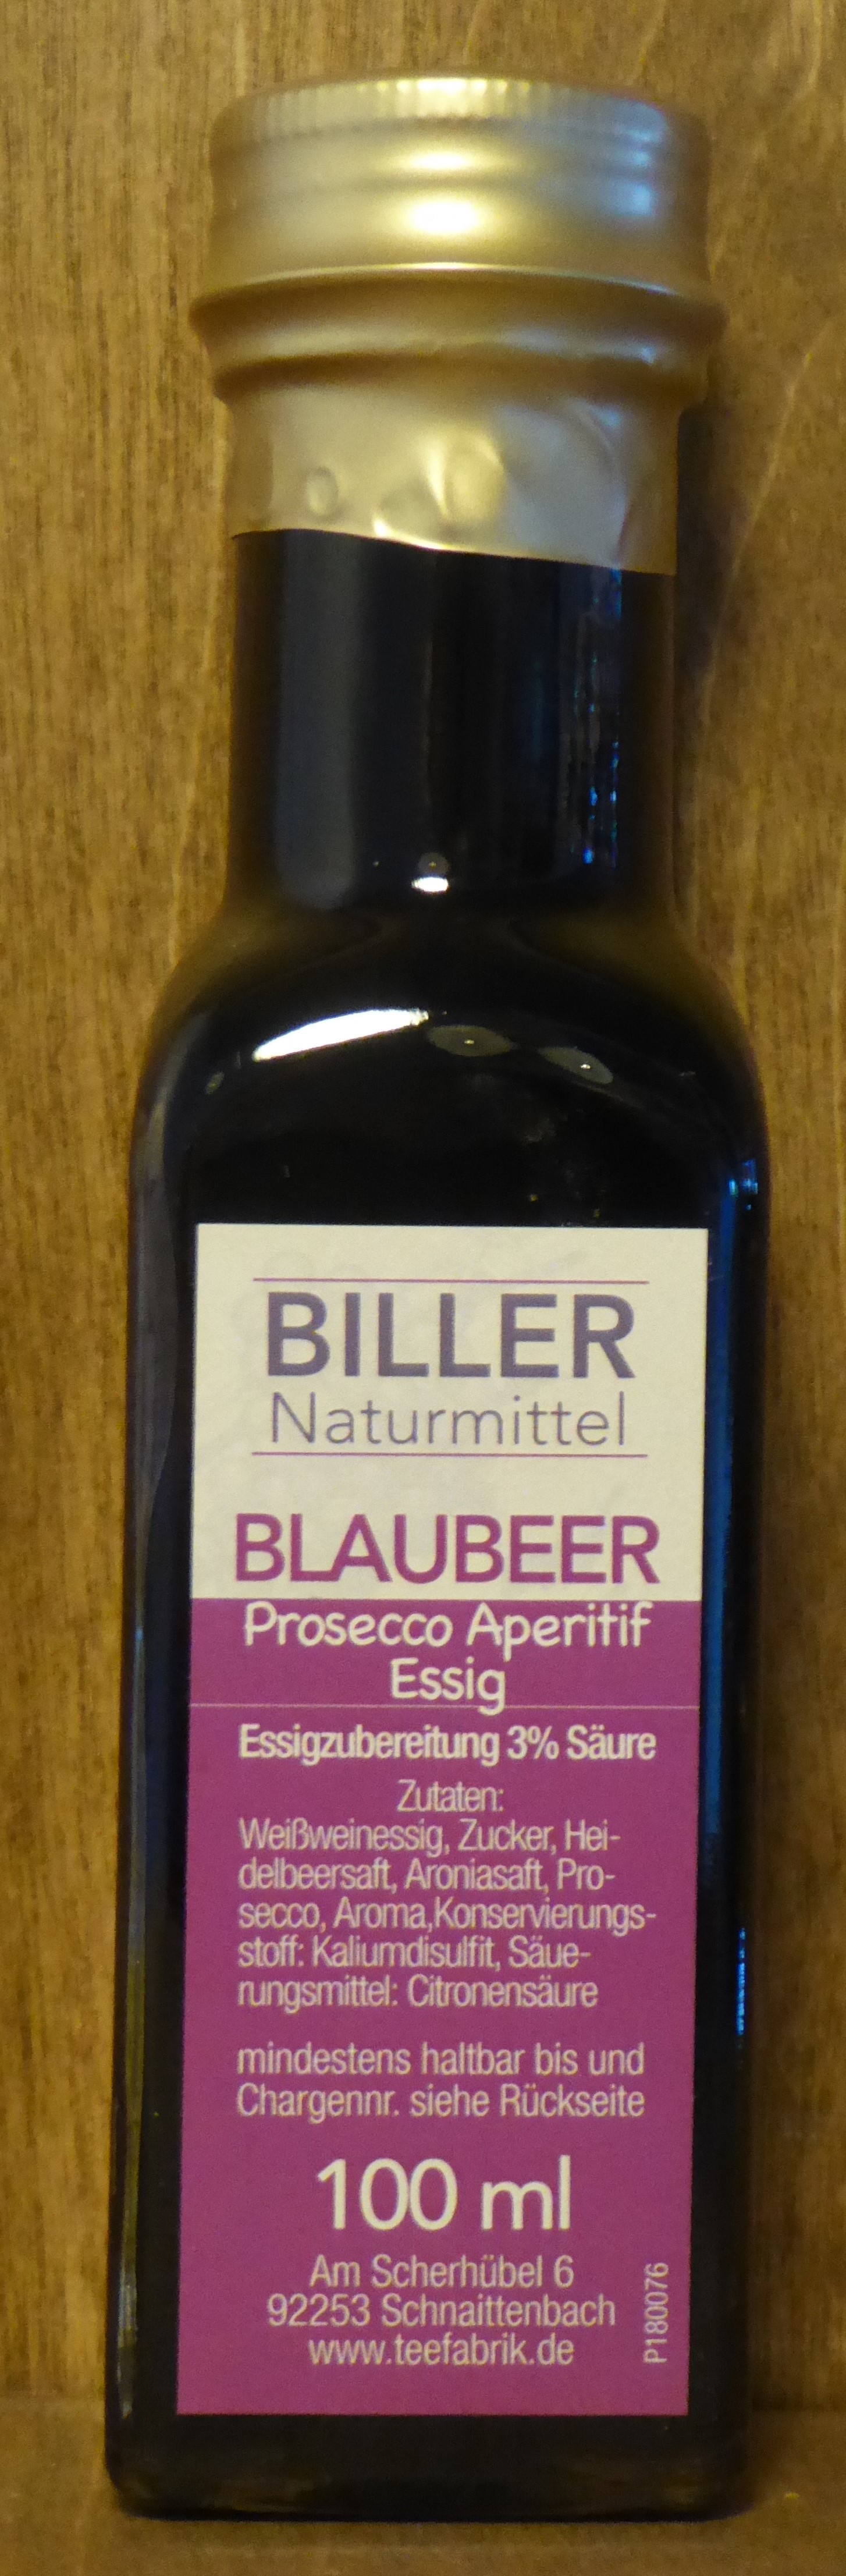 Blaubeer Prosecco Aperitif Essig, 100ml - Biller Naturmittel